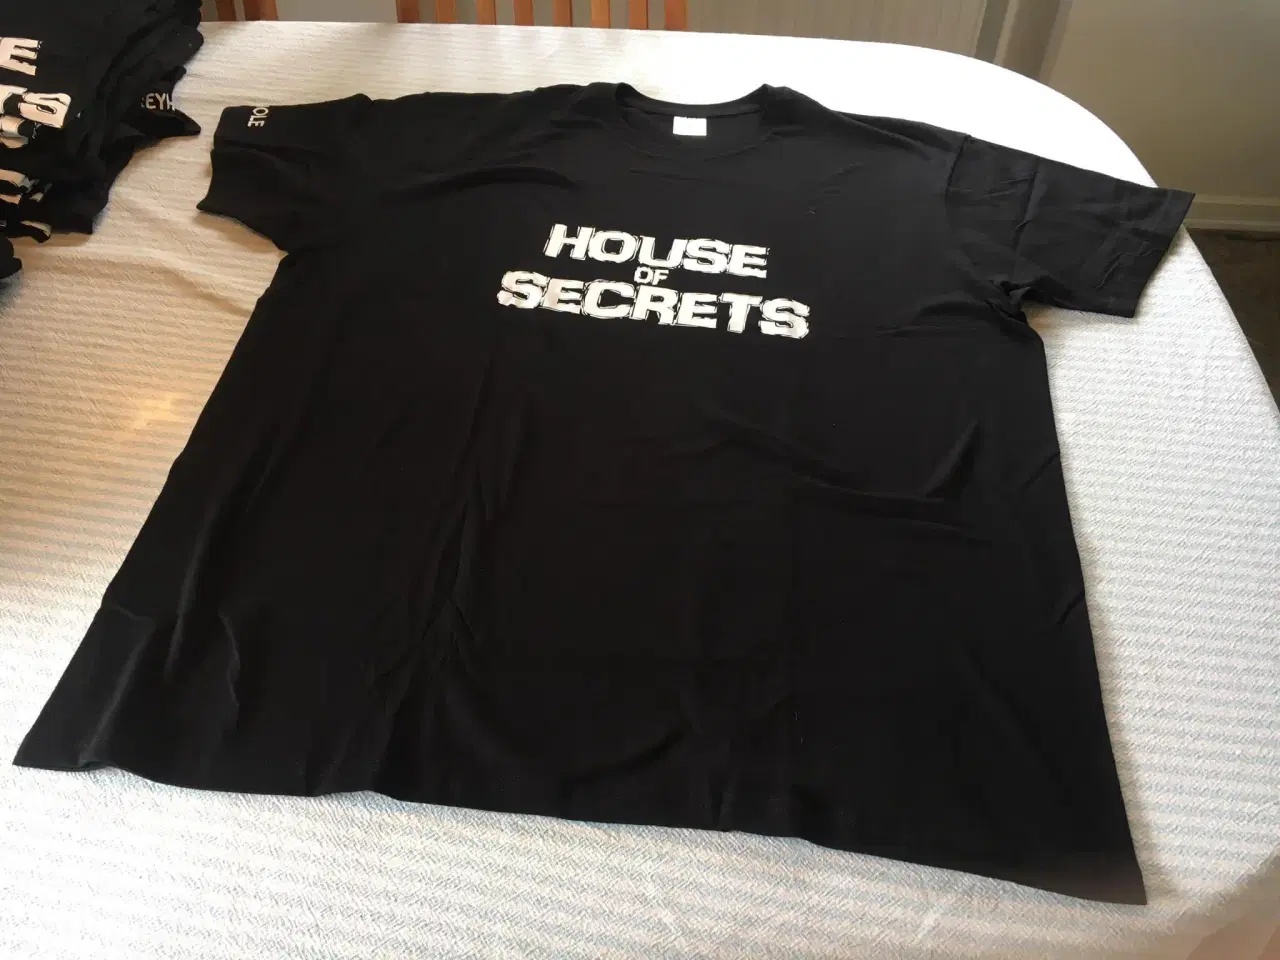 Billede 1 - T-shirts fra det danske rockband House of Secrets